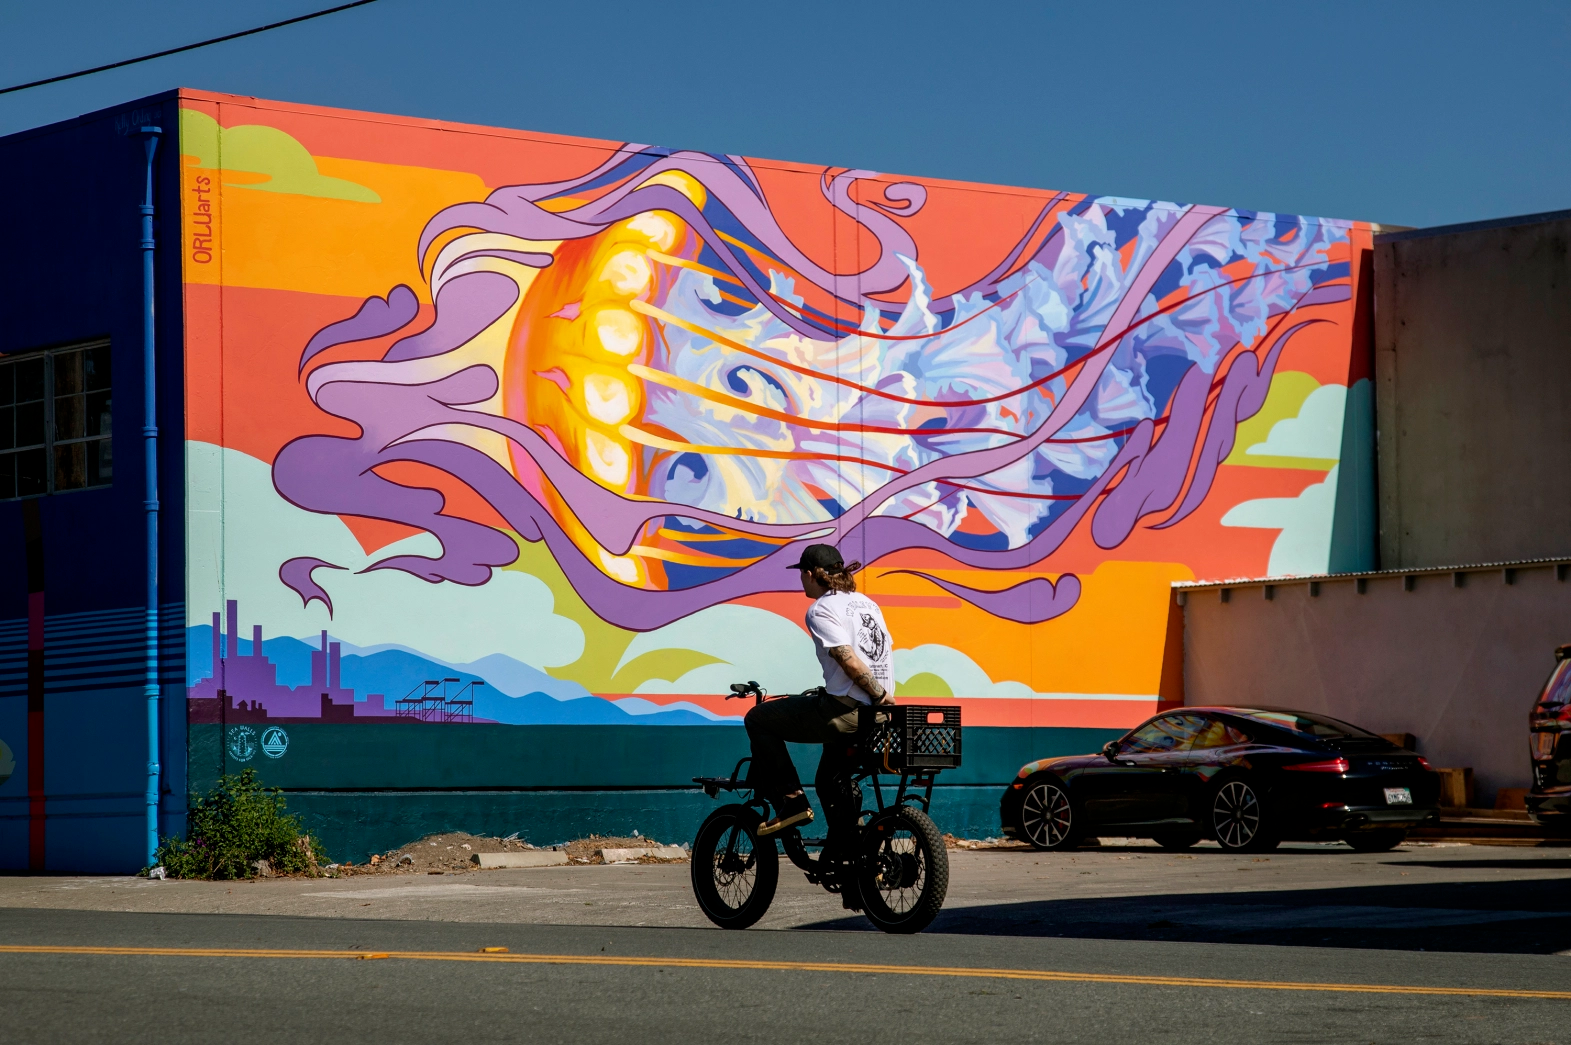 Un ciclista pasa frente a un mural gigante y colorido que representa una medusa.